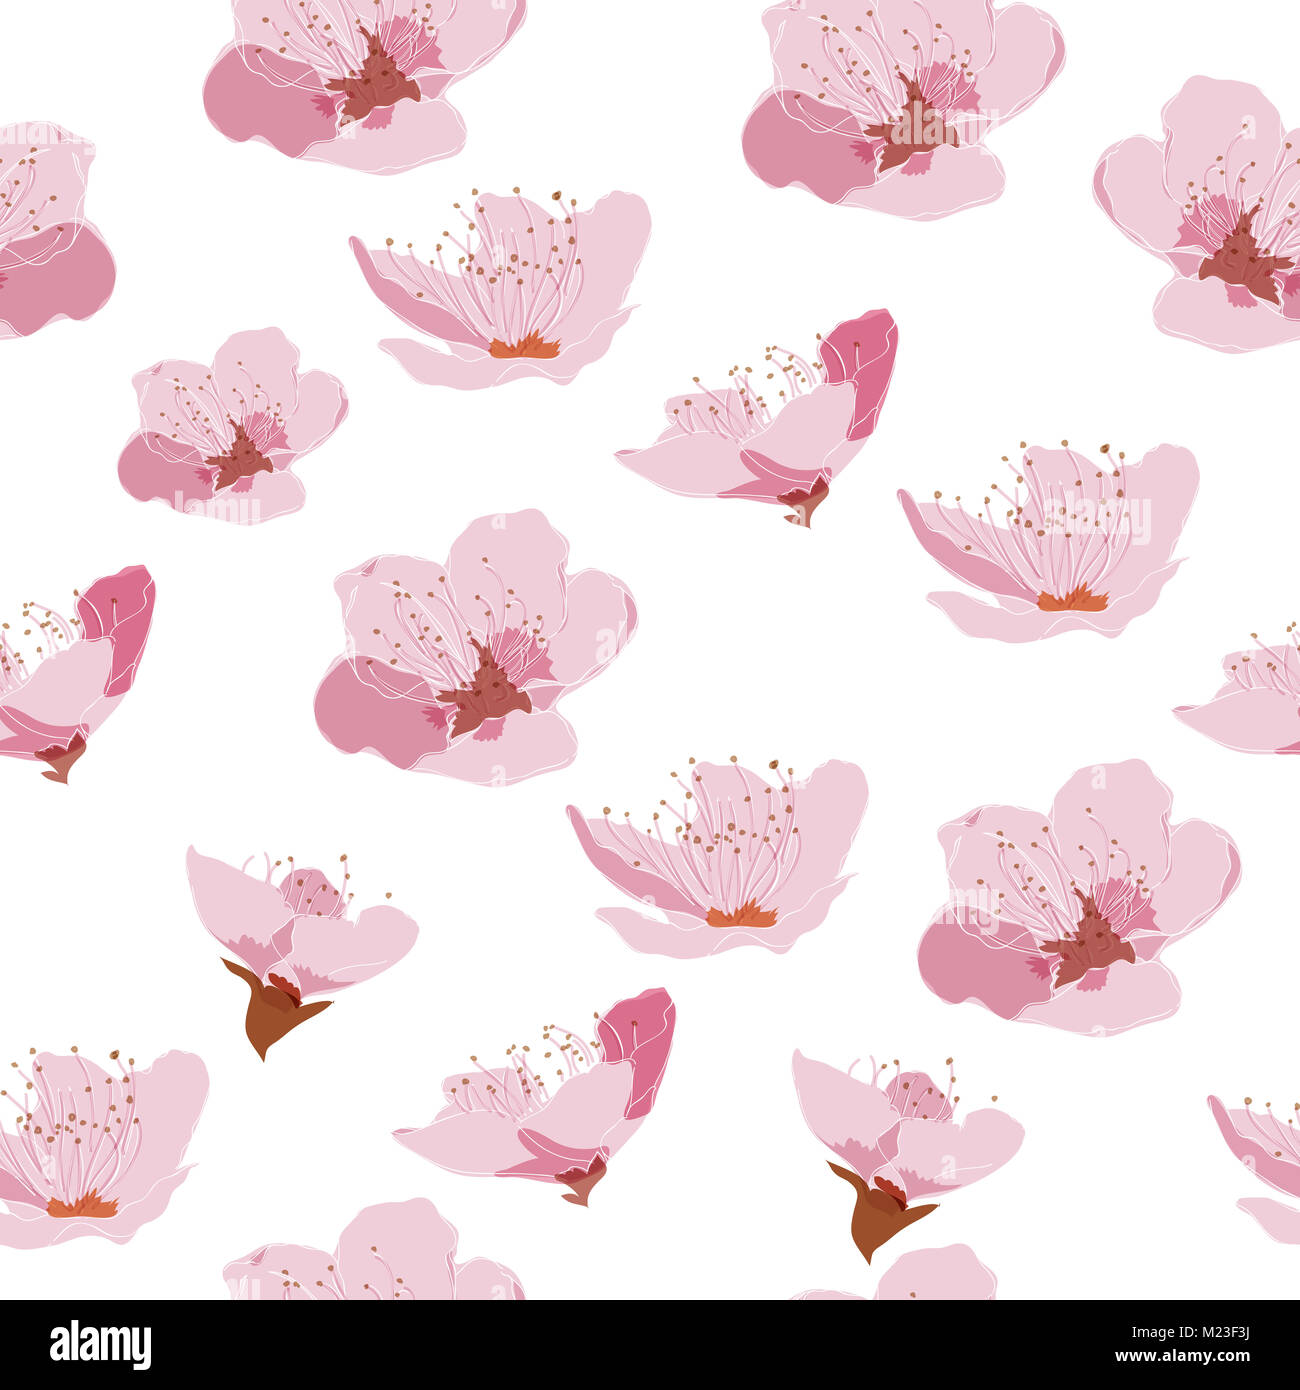 Cherry Blossom Muster Vektor. Pink floral background für Grußkarten, Poster, Vorlage, Deckblatt Design, Hintergrund, Geschenkpapier. Stockfoto